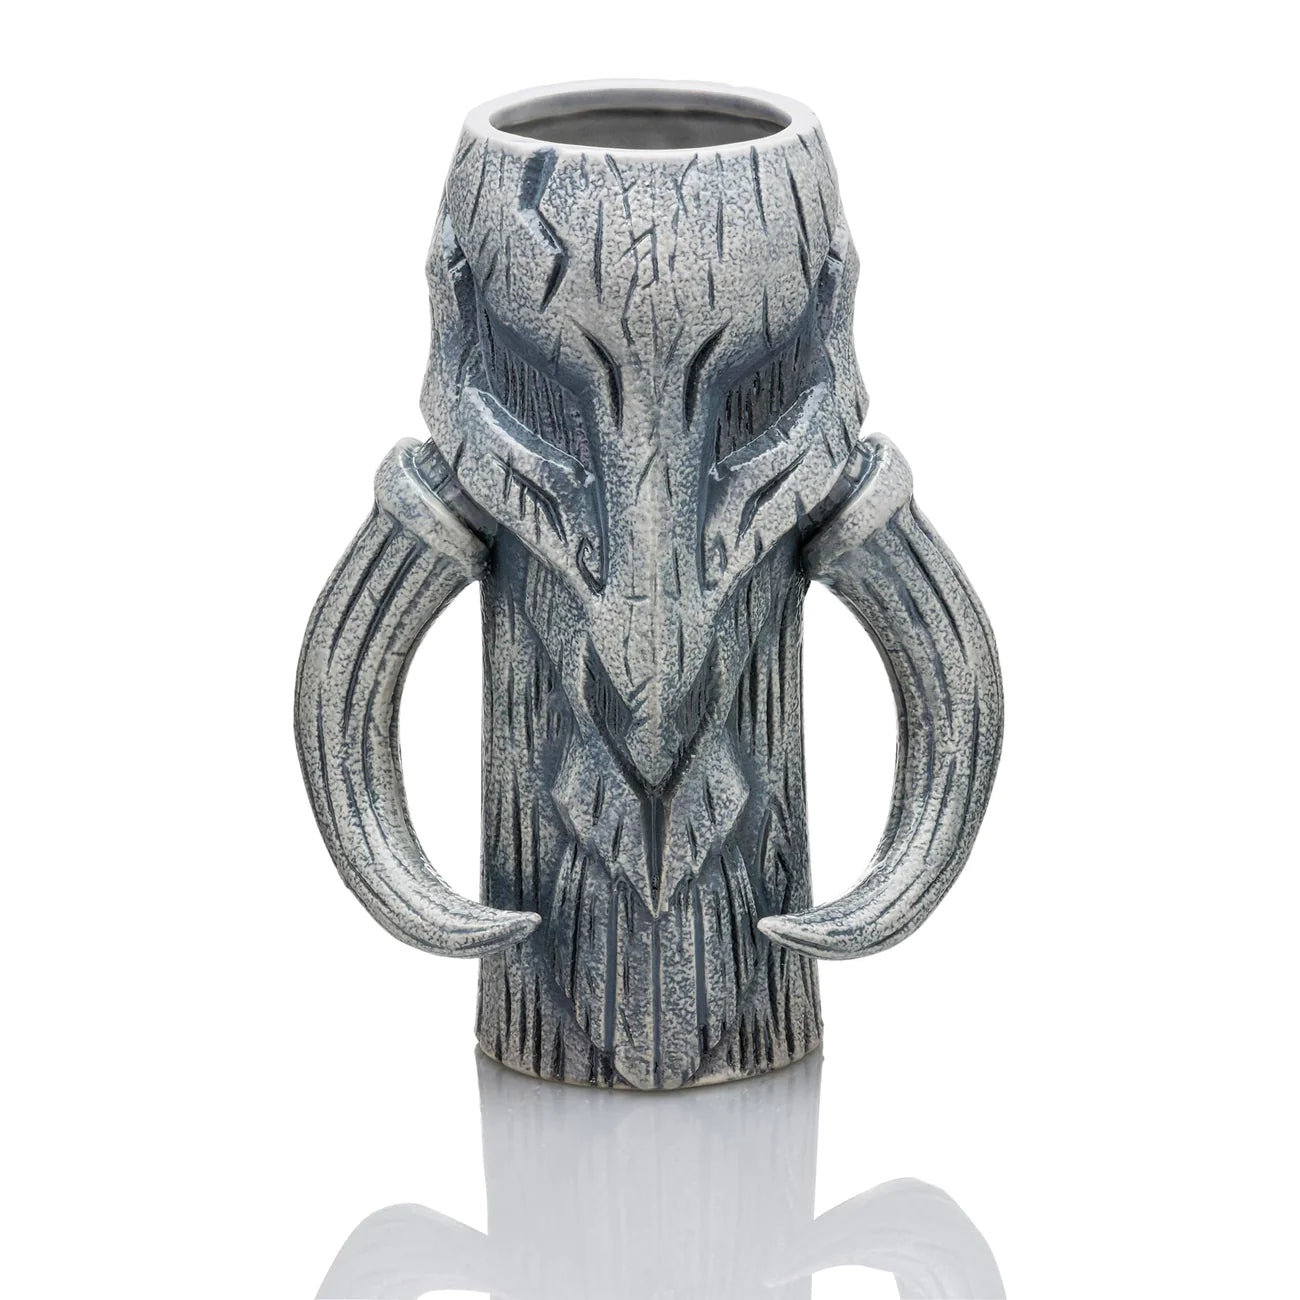 Star Wars Mythosaur 18oz Ceramic Mug